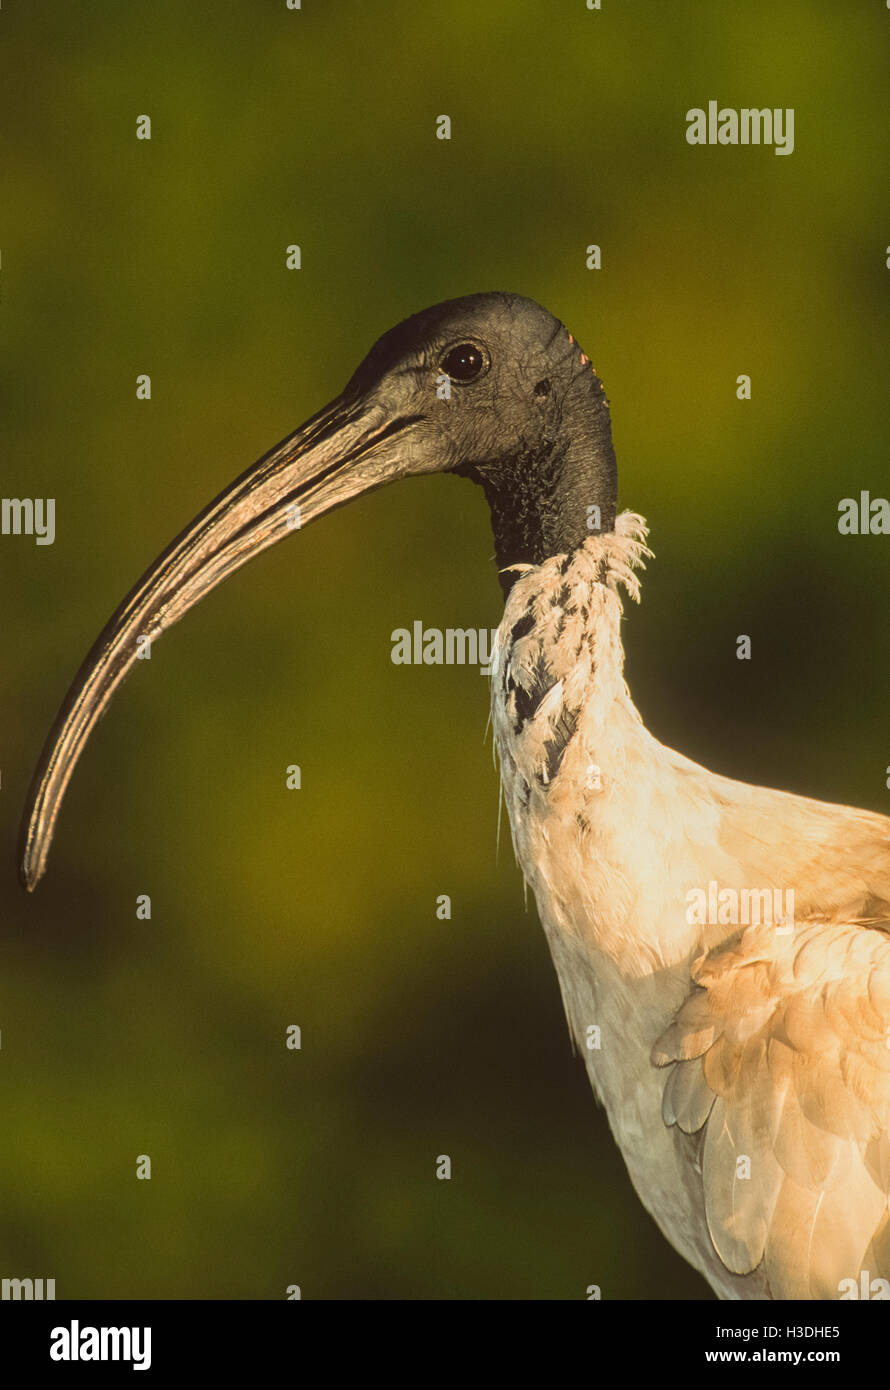 Australian White Ibis ou ibis sacré Threskiornis() Moluques, New South Wales, Australie, jusqu'à maintenant considéré comme un ravageur dans de nombreuses villes Banque D'Images